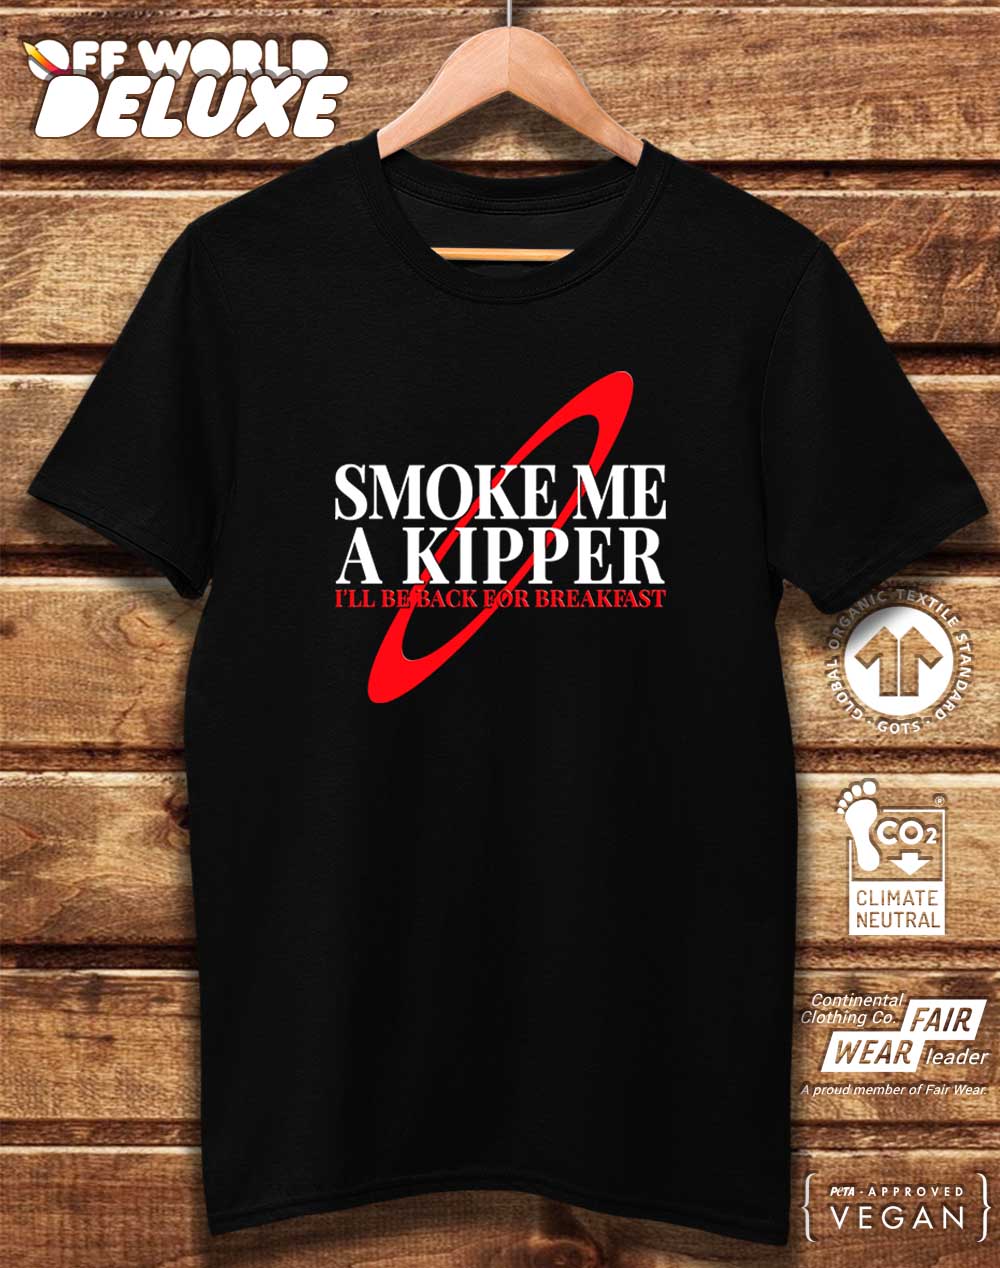 Black - DELUXE Smoke Me a Kipper Organic Cotton T-Shirt